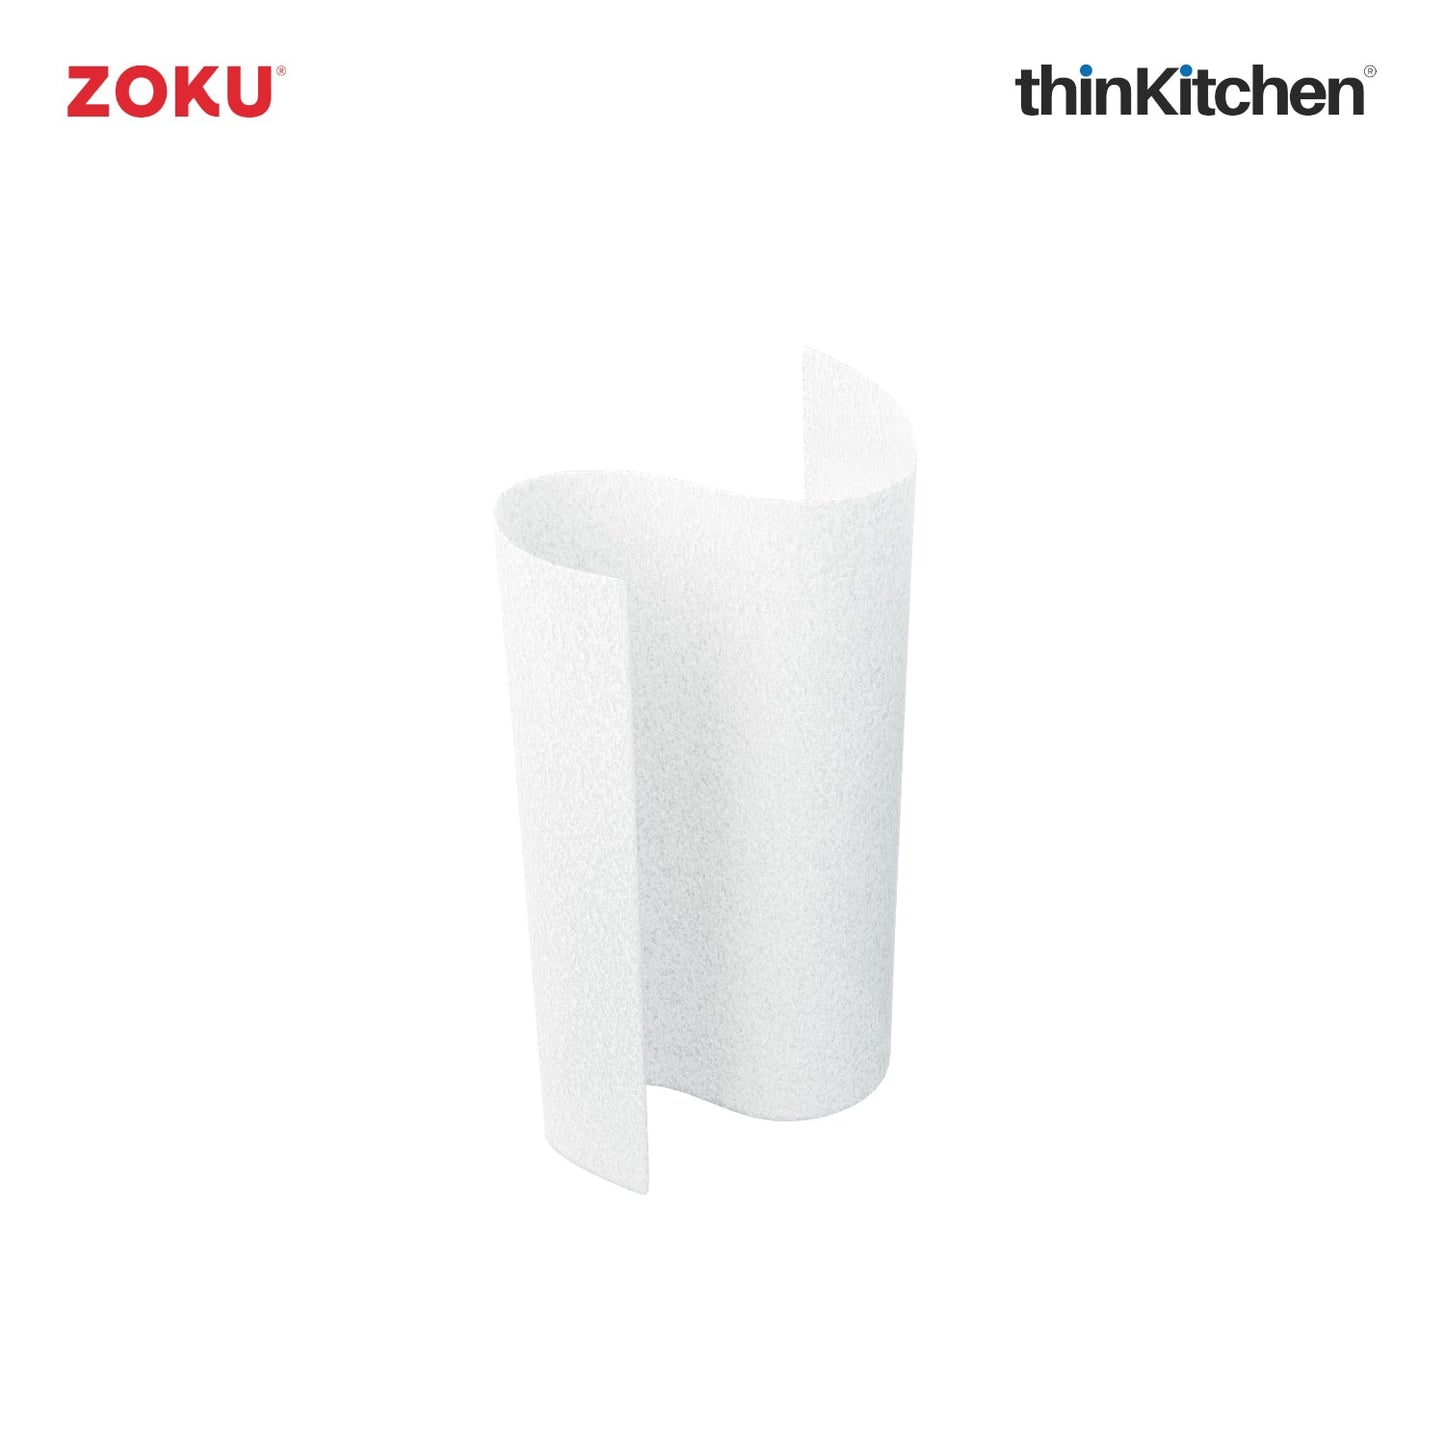 thinKitchen™ Zoku Teal Pocket Wipe Dispenser